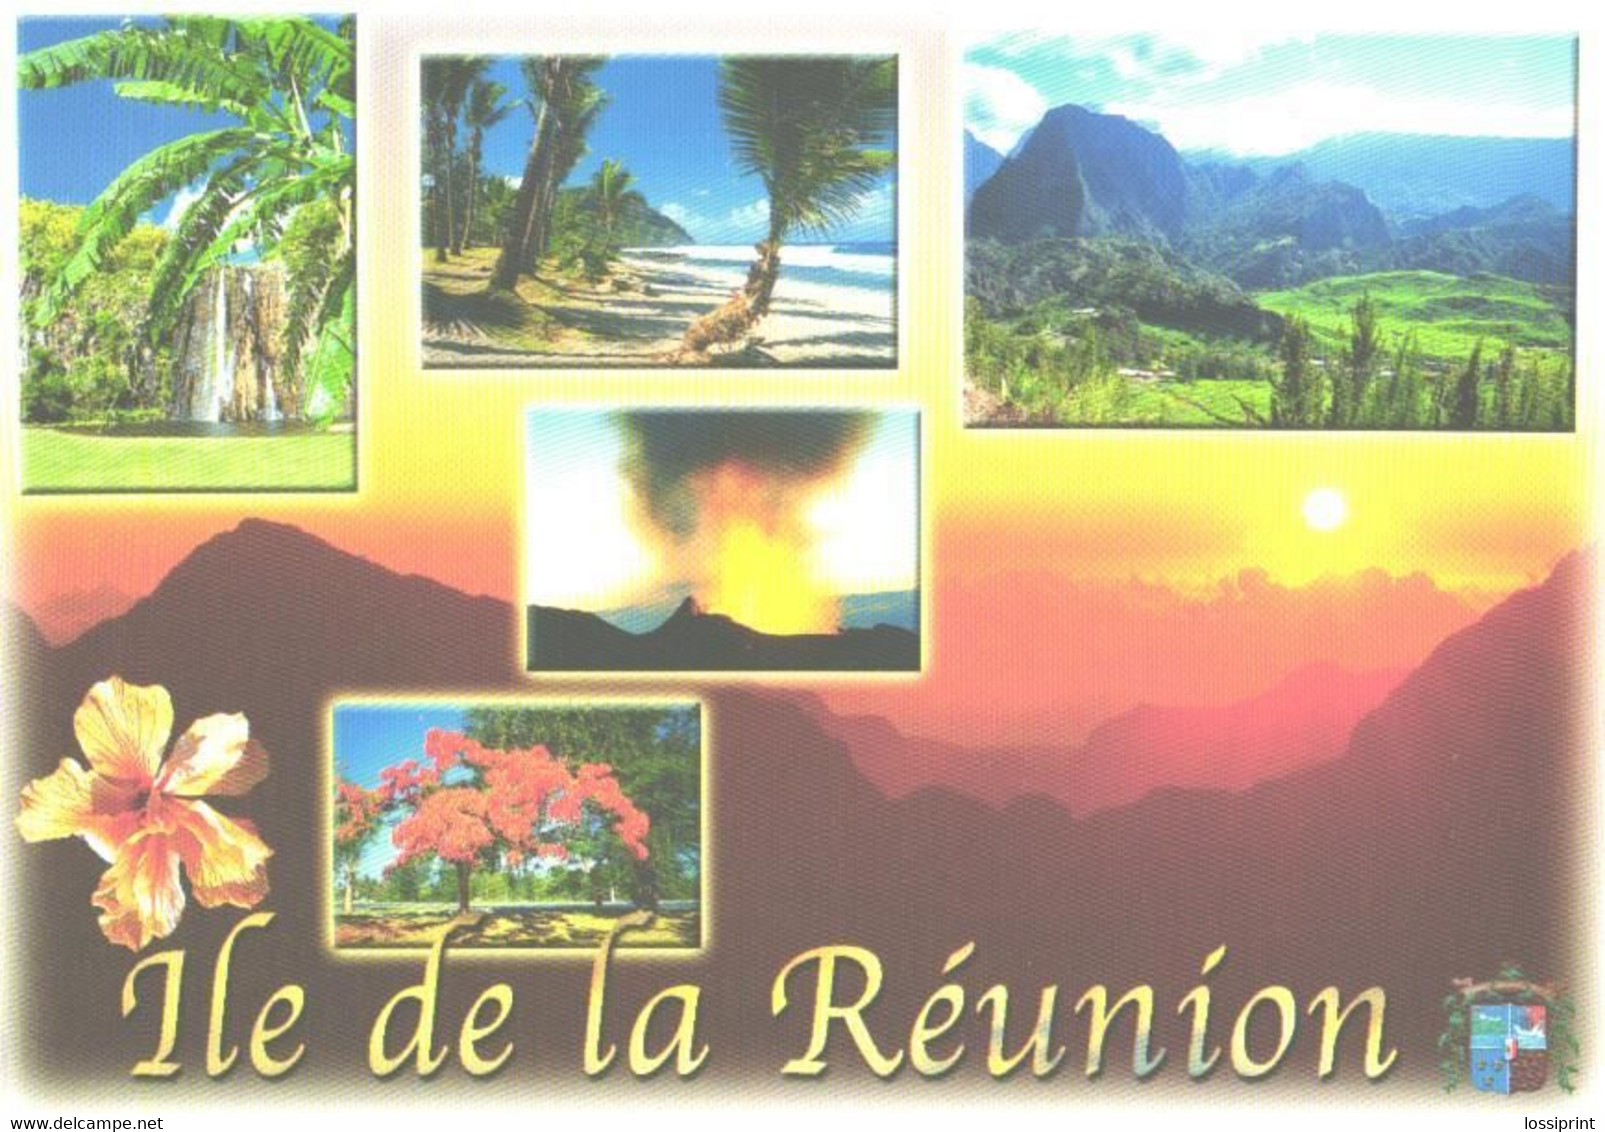 Reunion Island:Sunset, Mountains, Volcano - Reunión